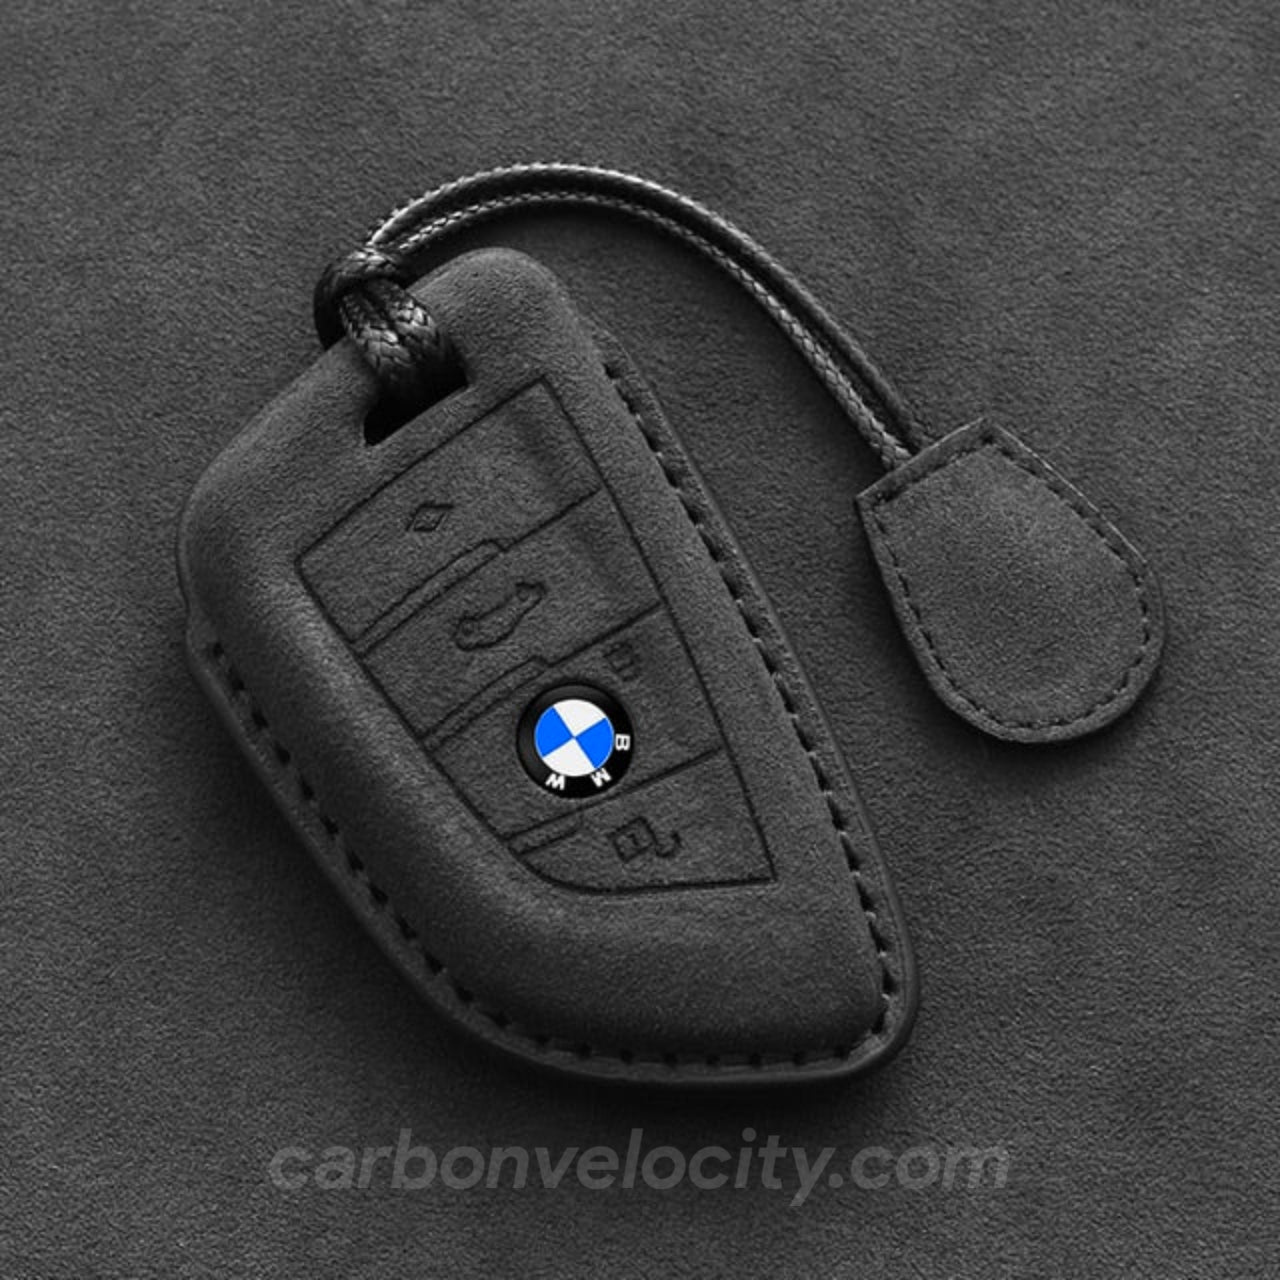 Premium Leather BMW Car Key Case – Carbon Velocity Premium BMW Mods   Carbon Fiber Aftermarket Accessories